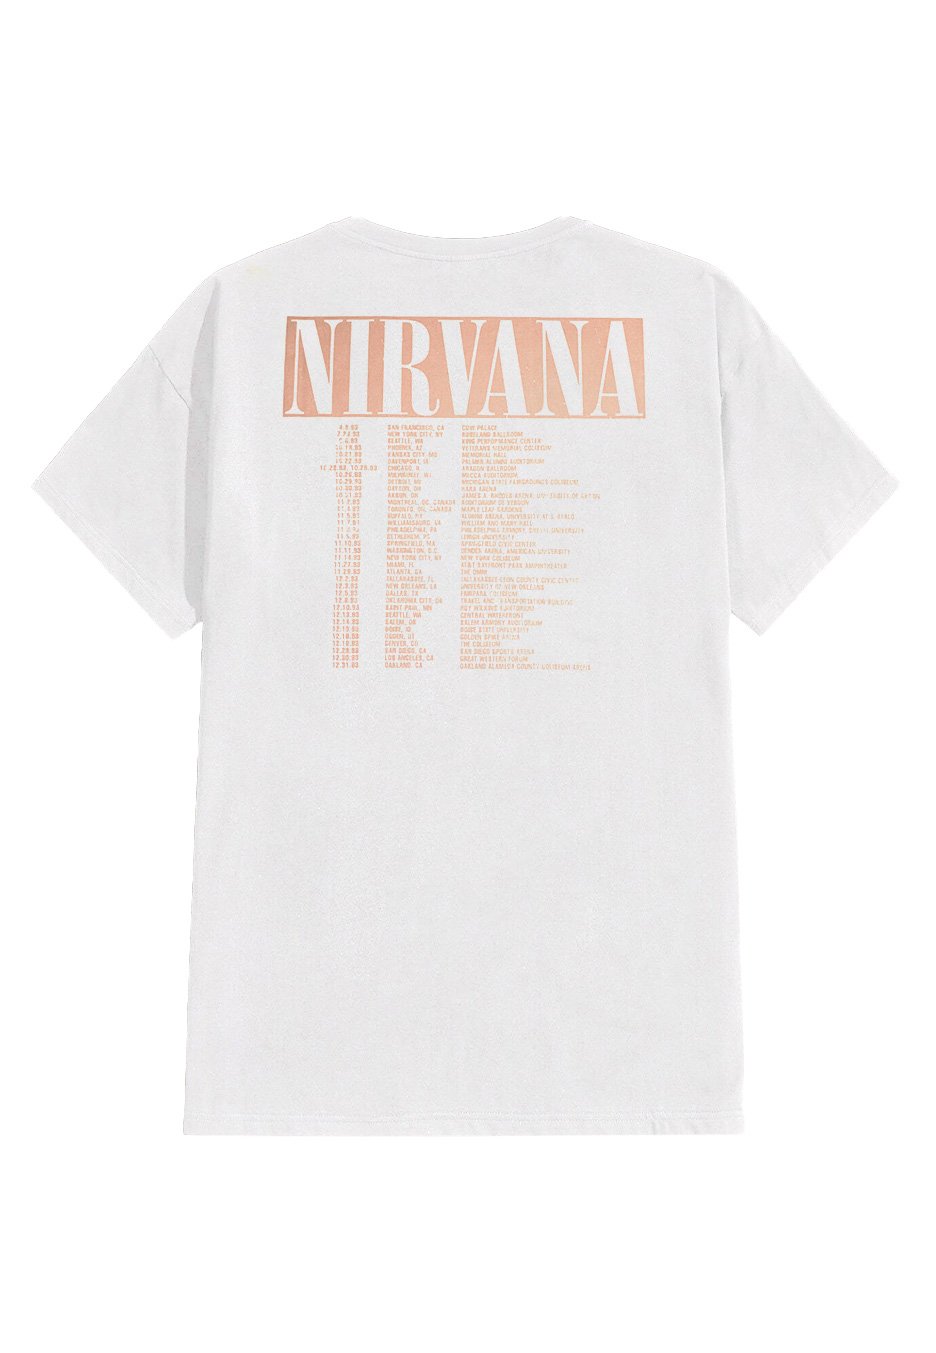 Nirvana - In Utero Tour White - T-Shirt